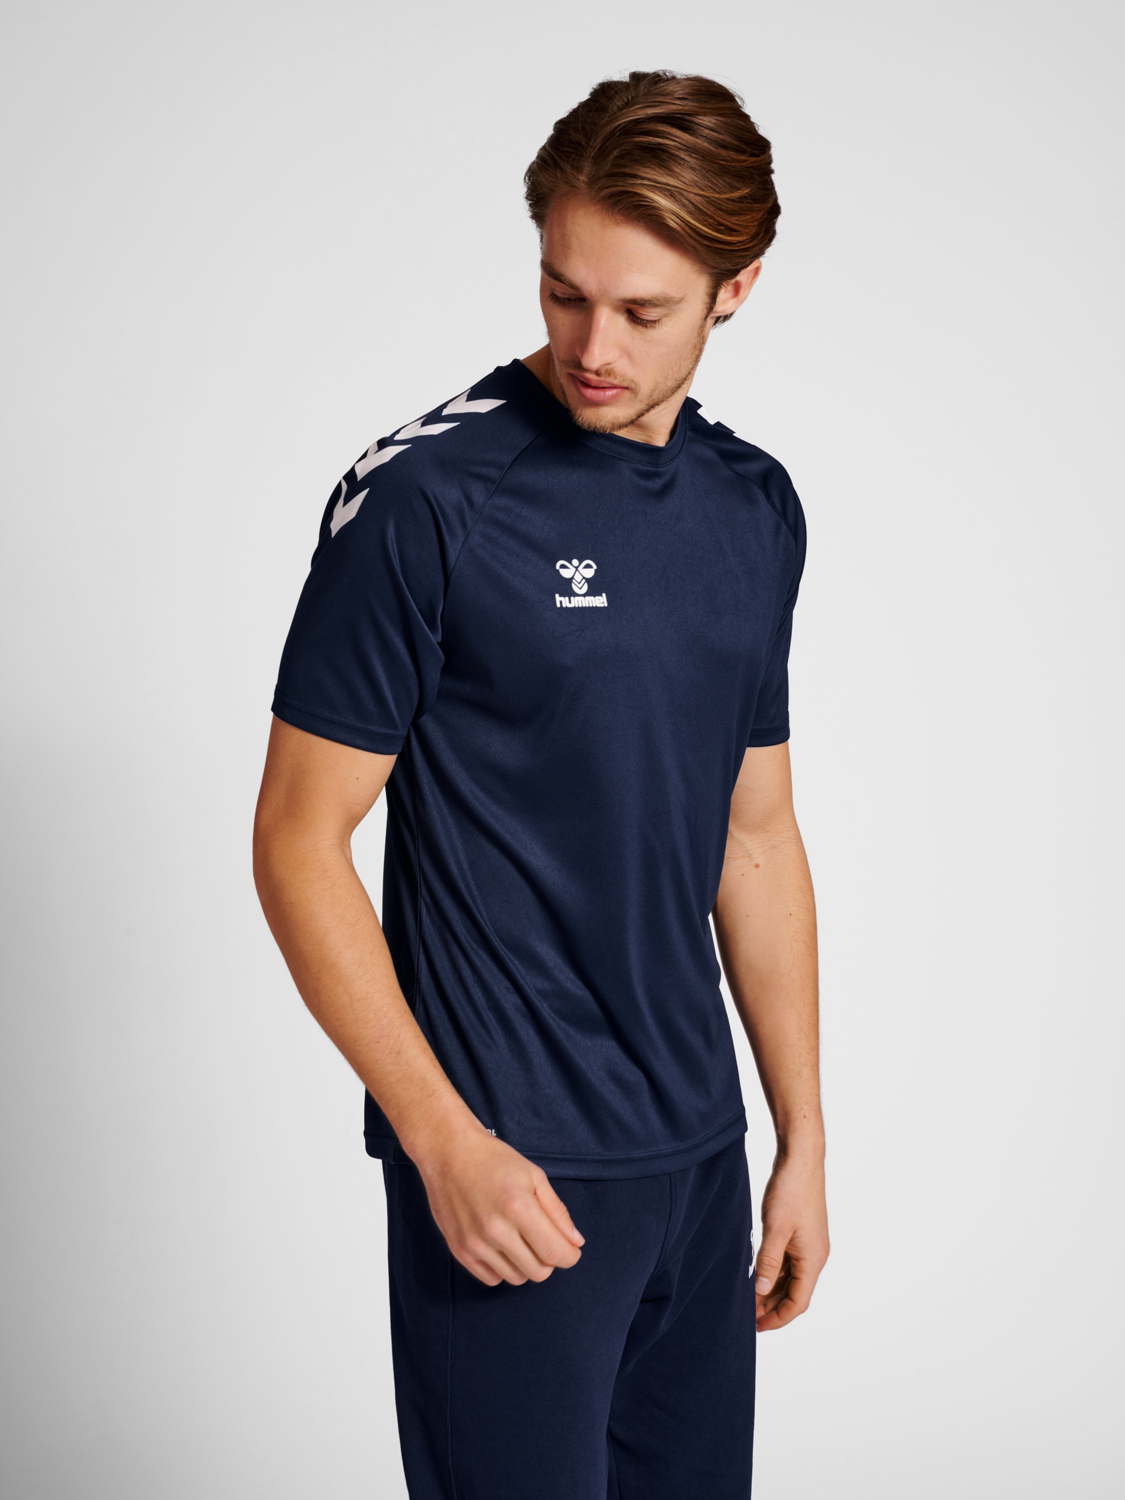 Hummel Fußball Core Polyester T-Shirt Herren marine 